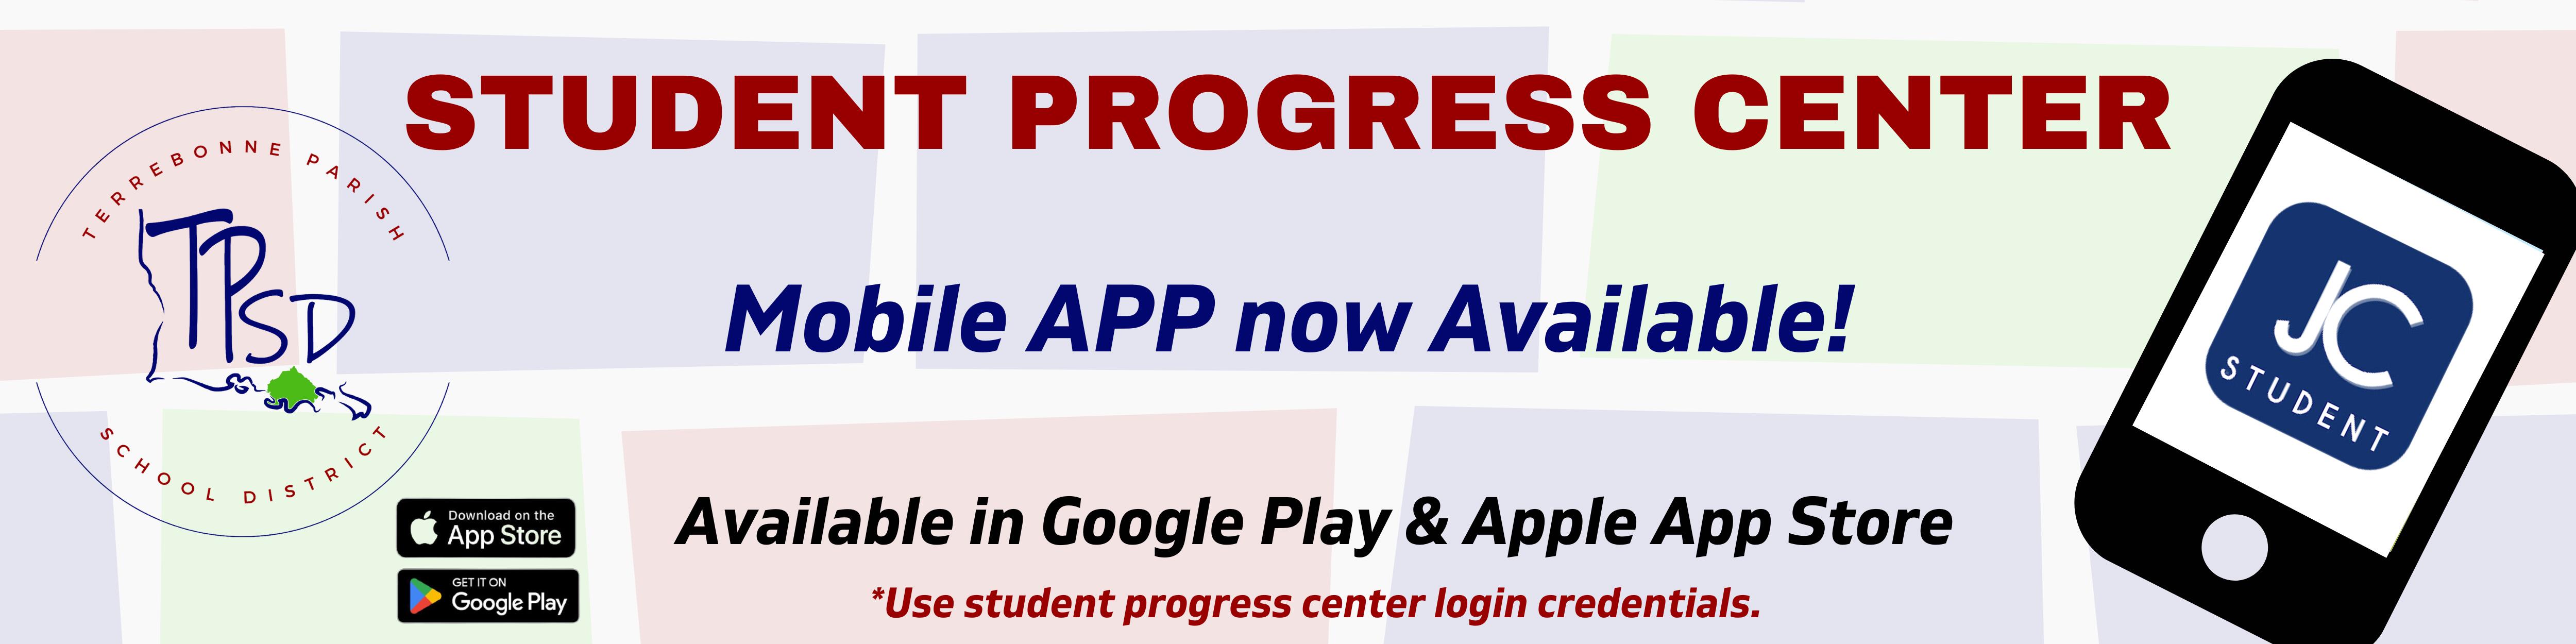 Student Progress Center - Mobile App